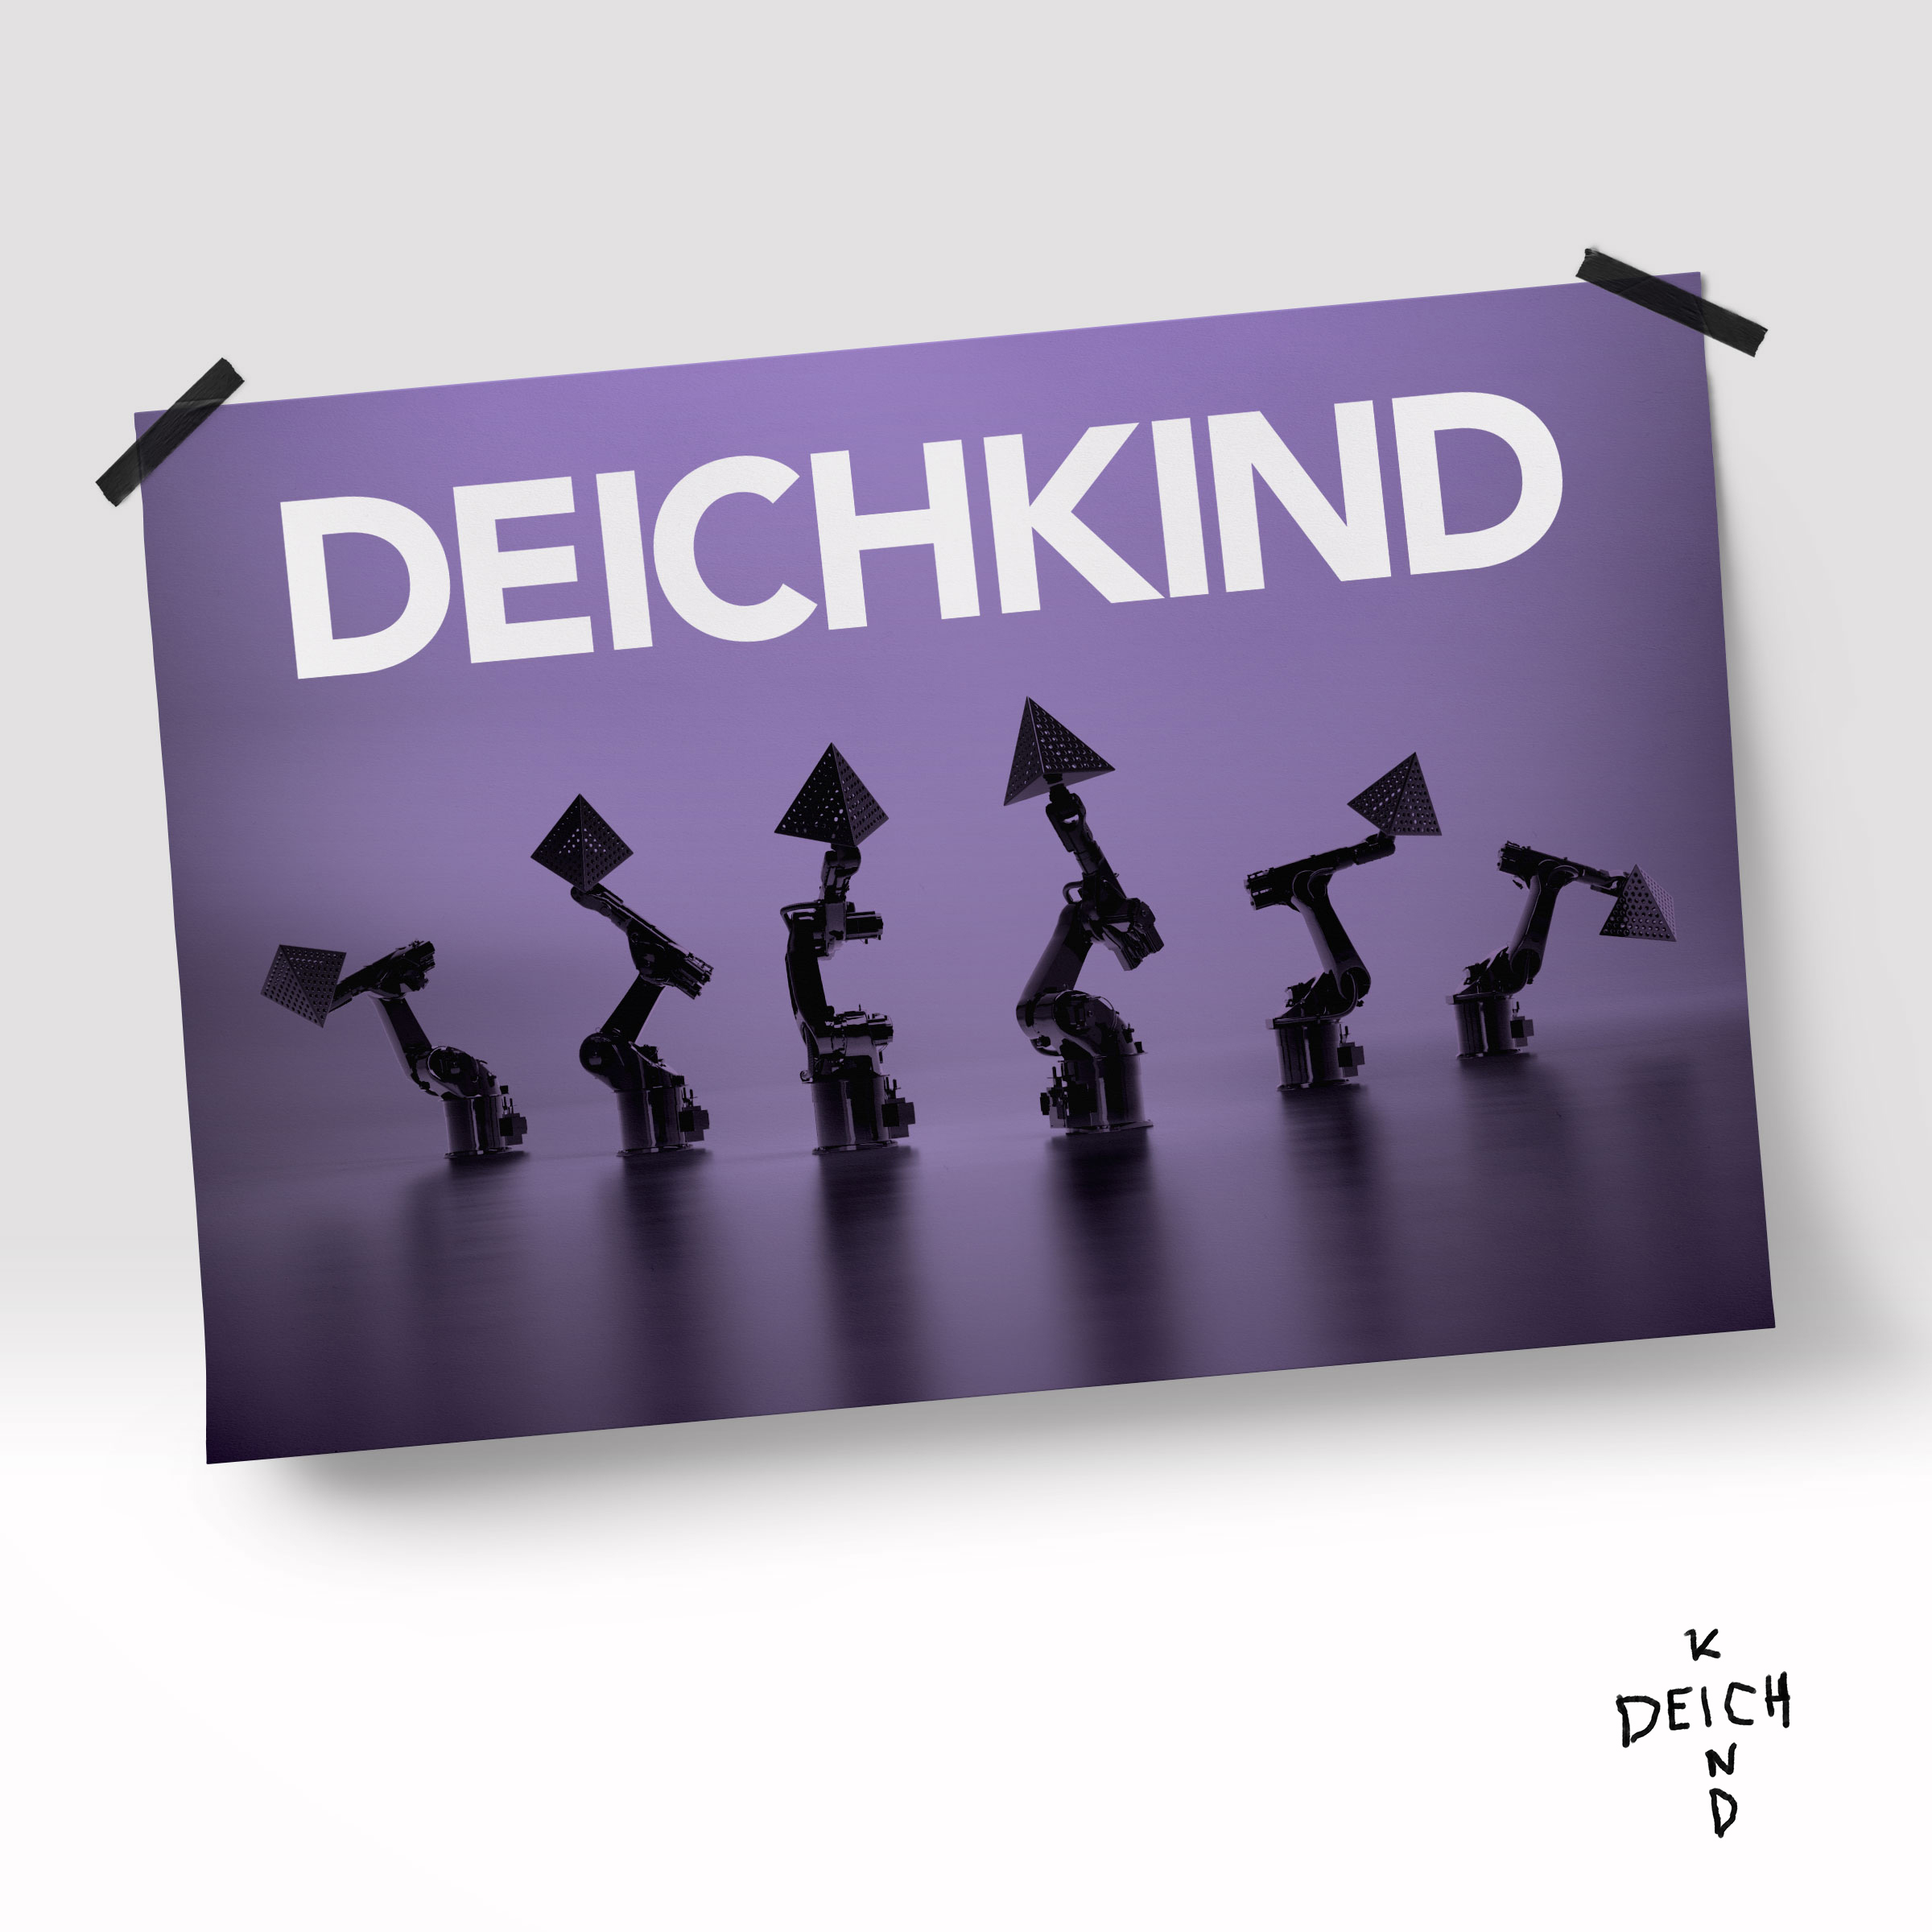 Wer Deichkind Sagt - Das? Denn (Richtig Limited (CD) - Box, Gute Edition)